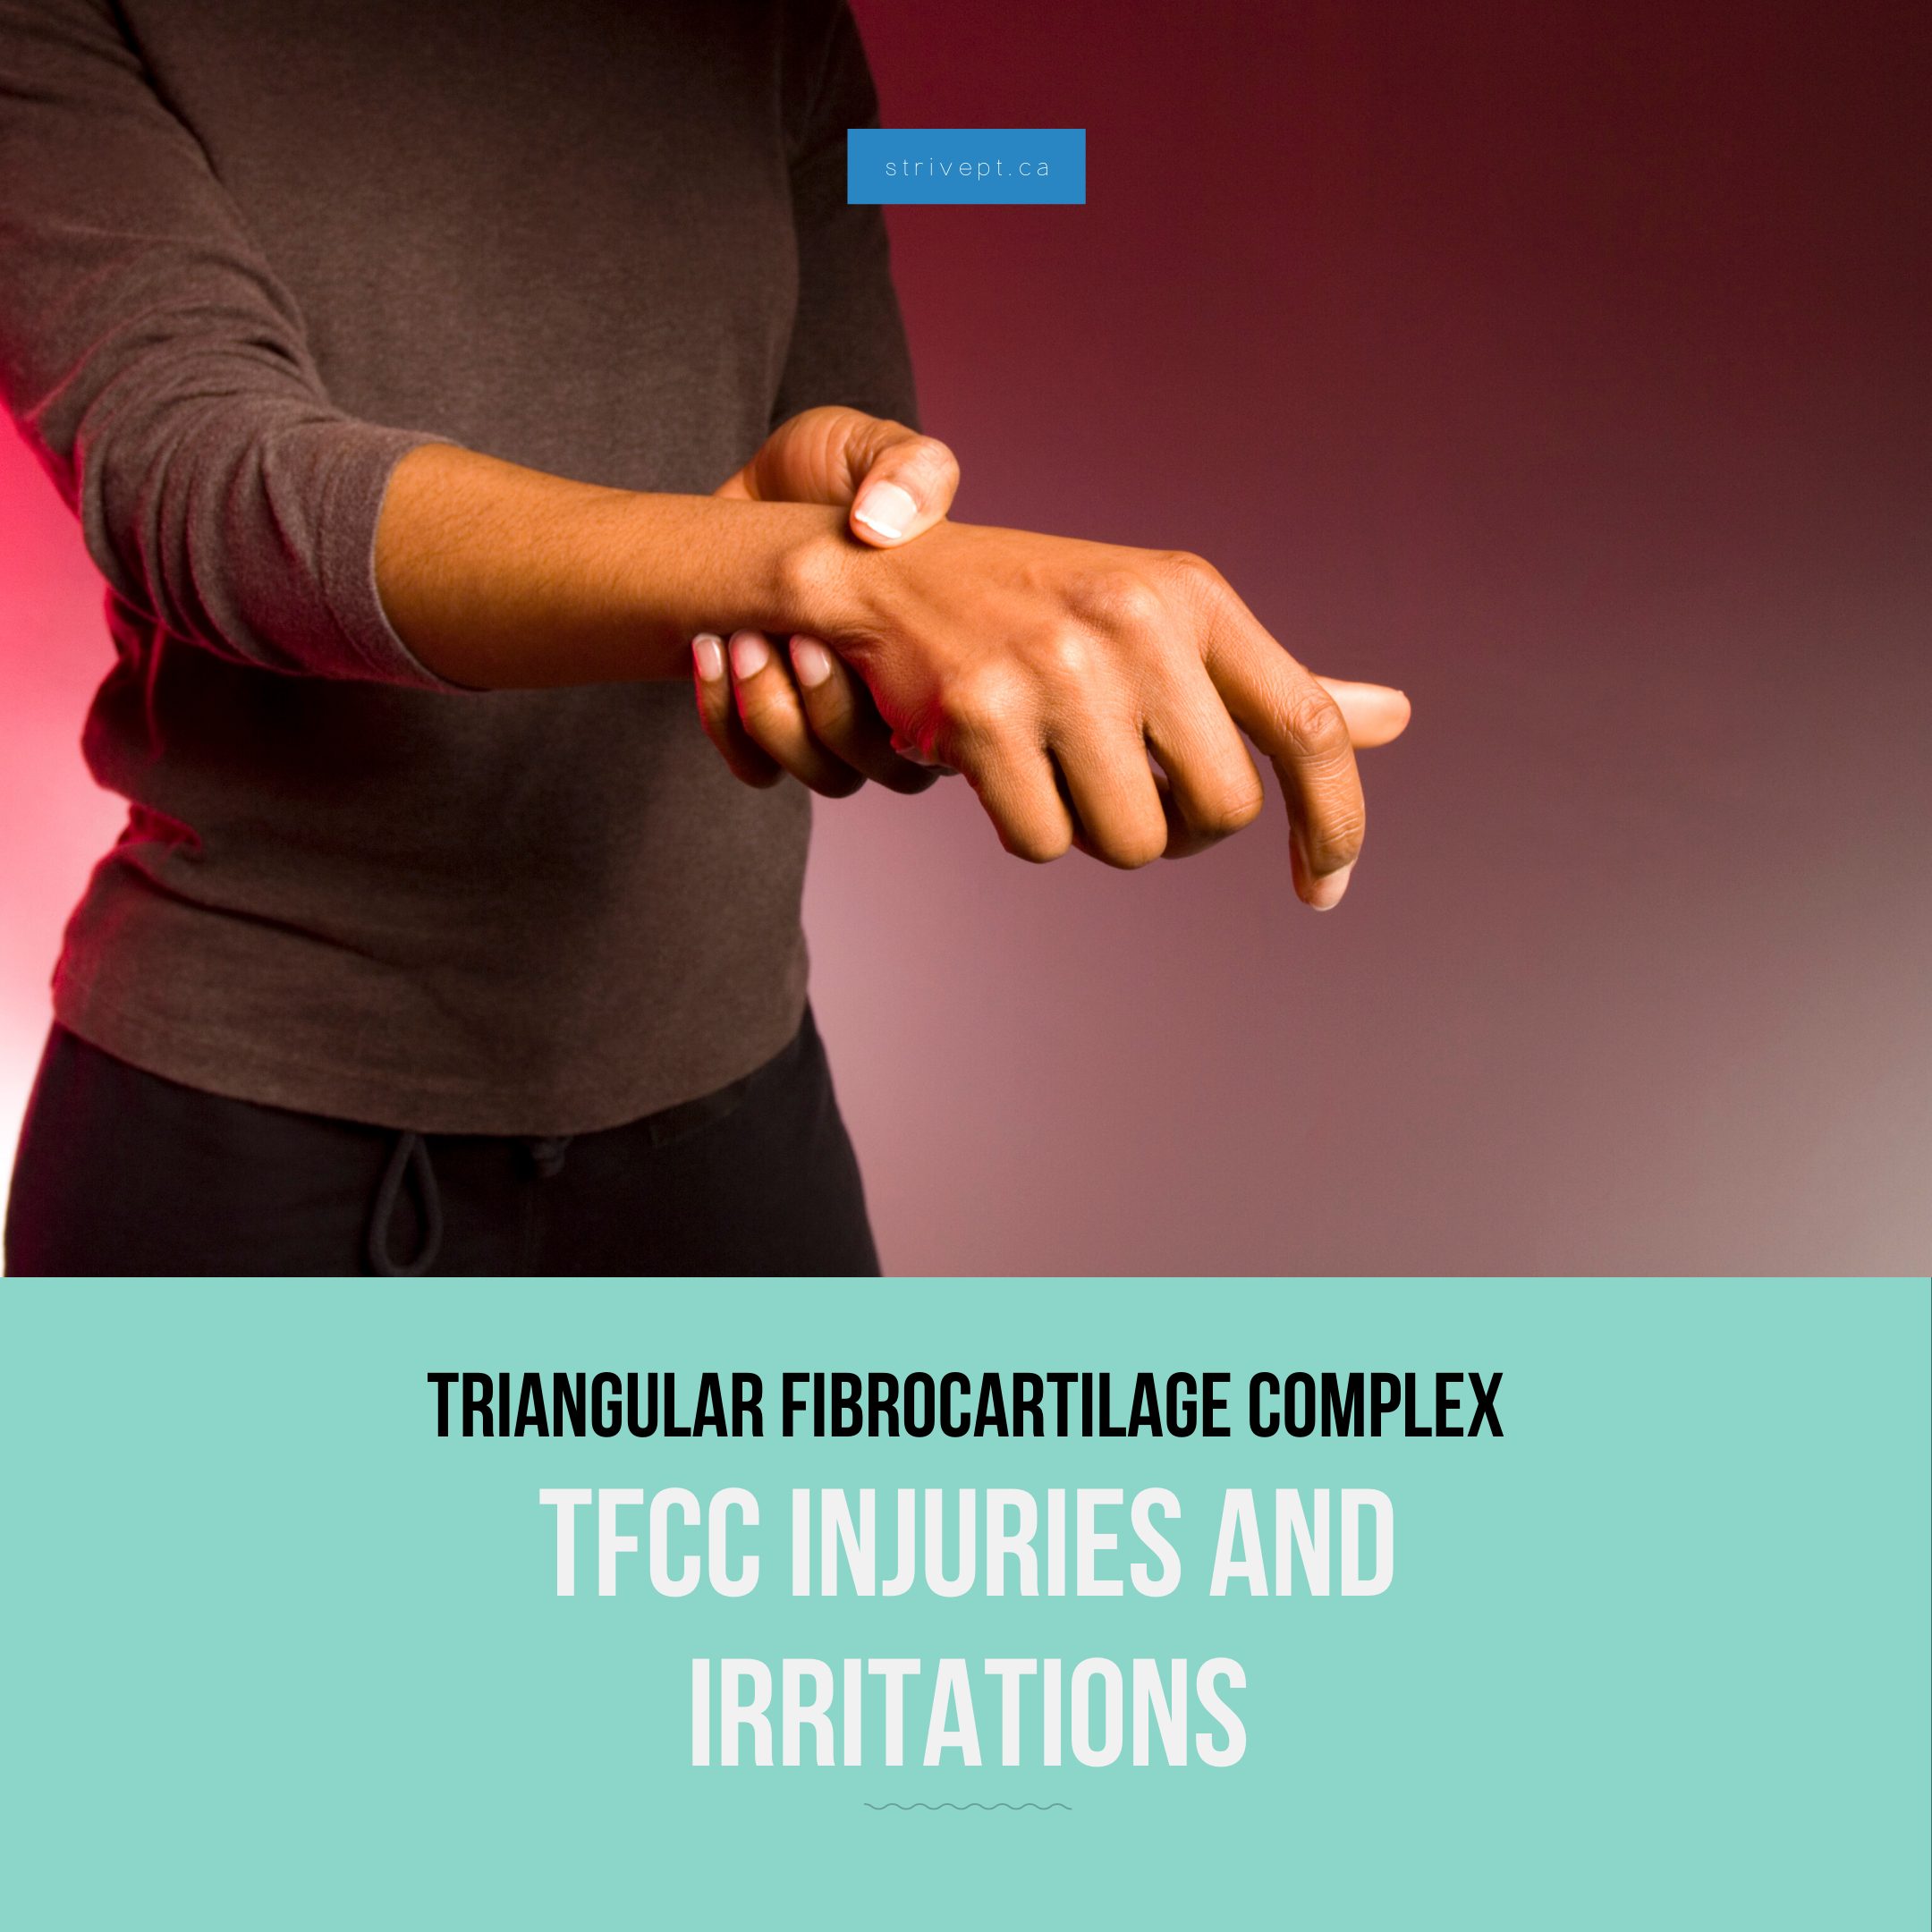 For det andet Transformer Ubrugelig TFCC Injury & Irritation: Triangular Fibrocartilage Complex